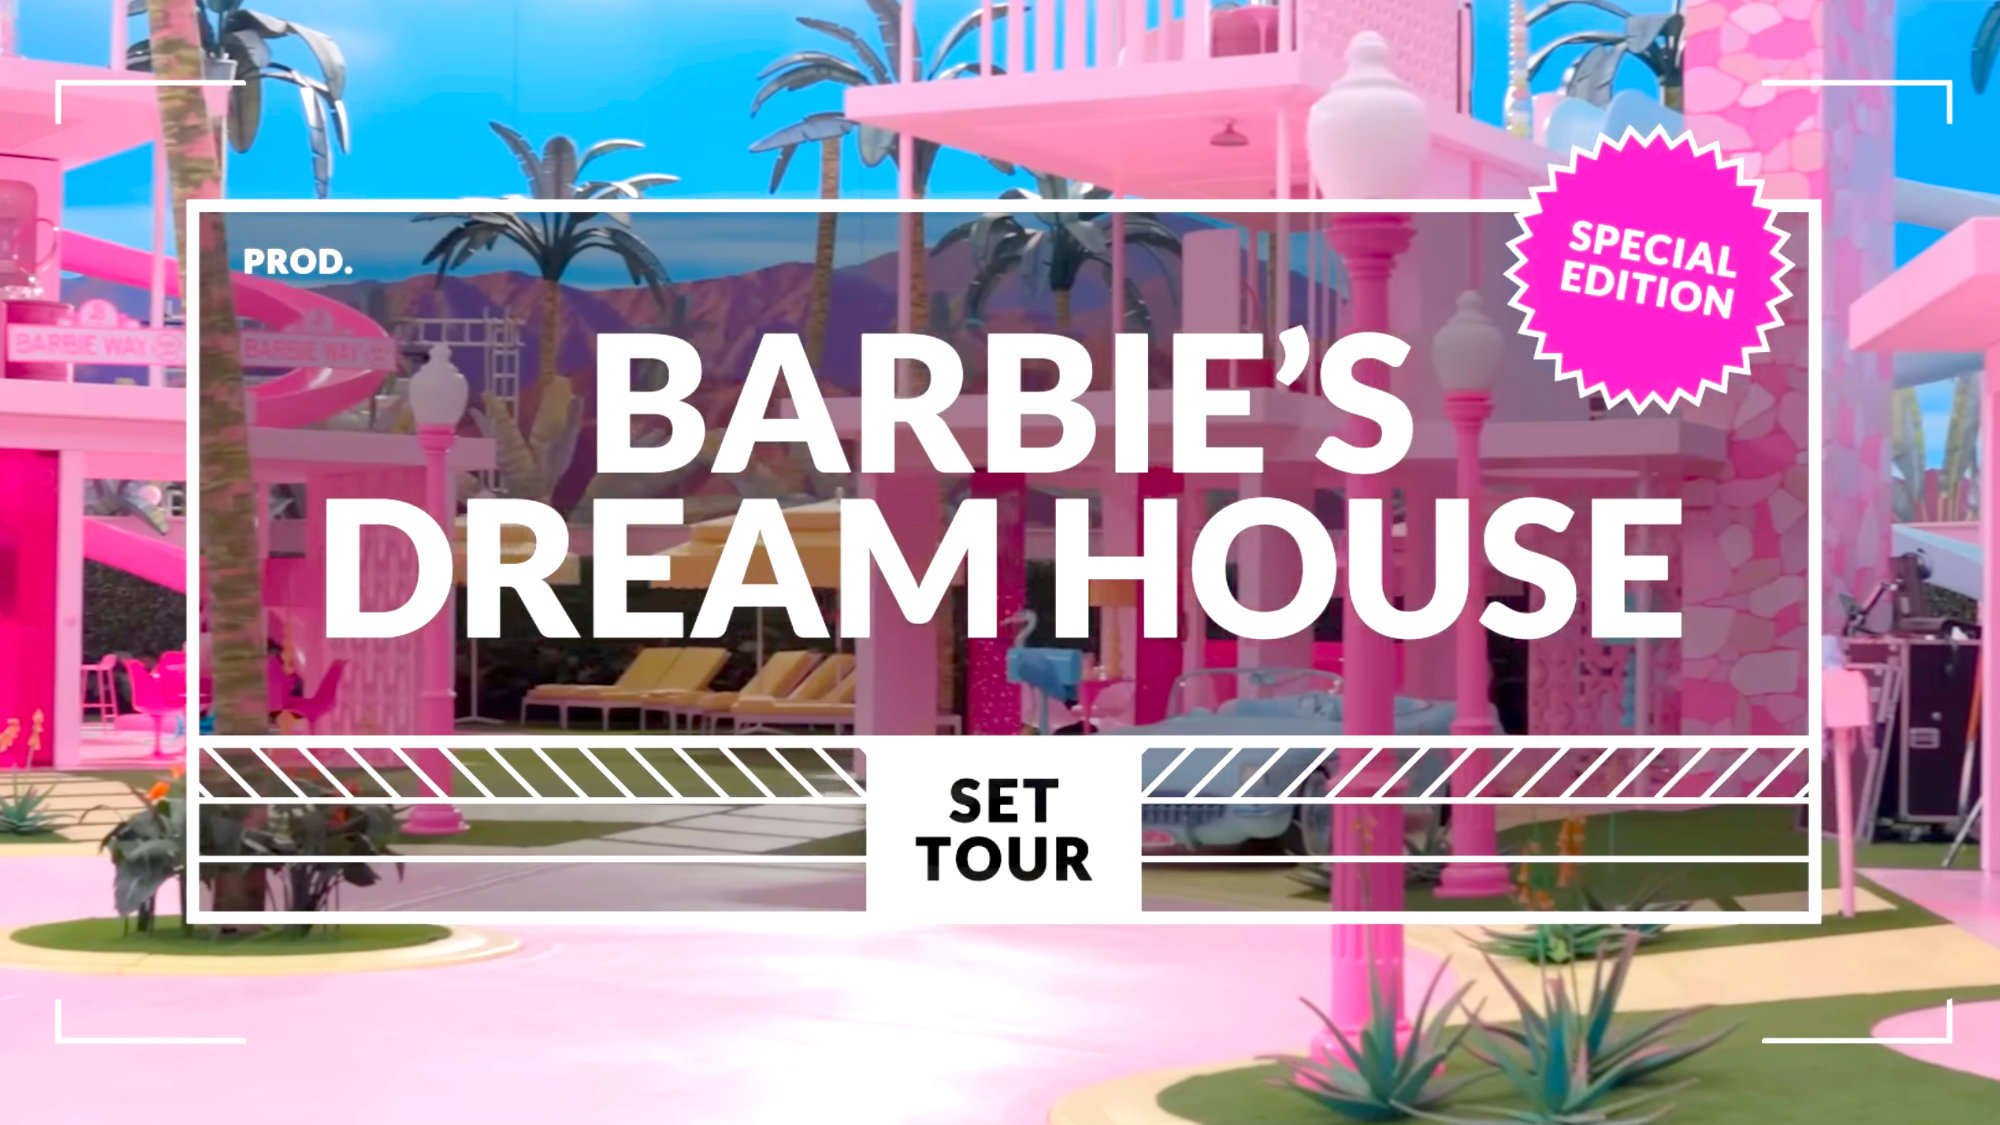 Barbie Dreamhouse Tour Completo: Margot Robbie nos enseña su casa rosa y nos revela sus secretos